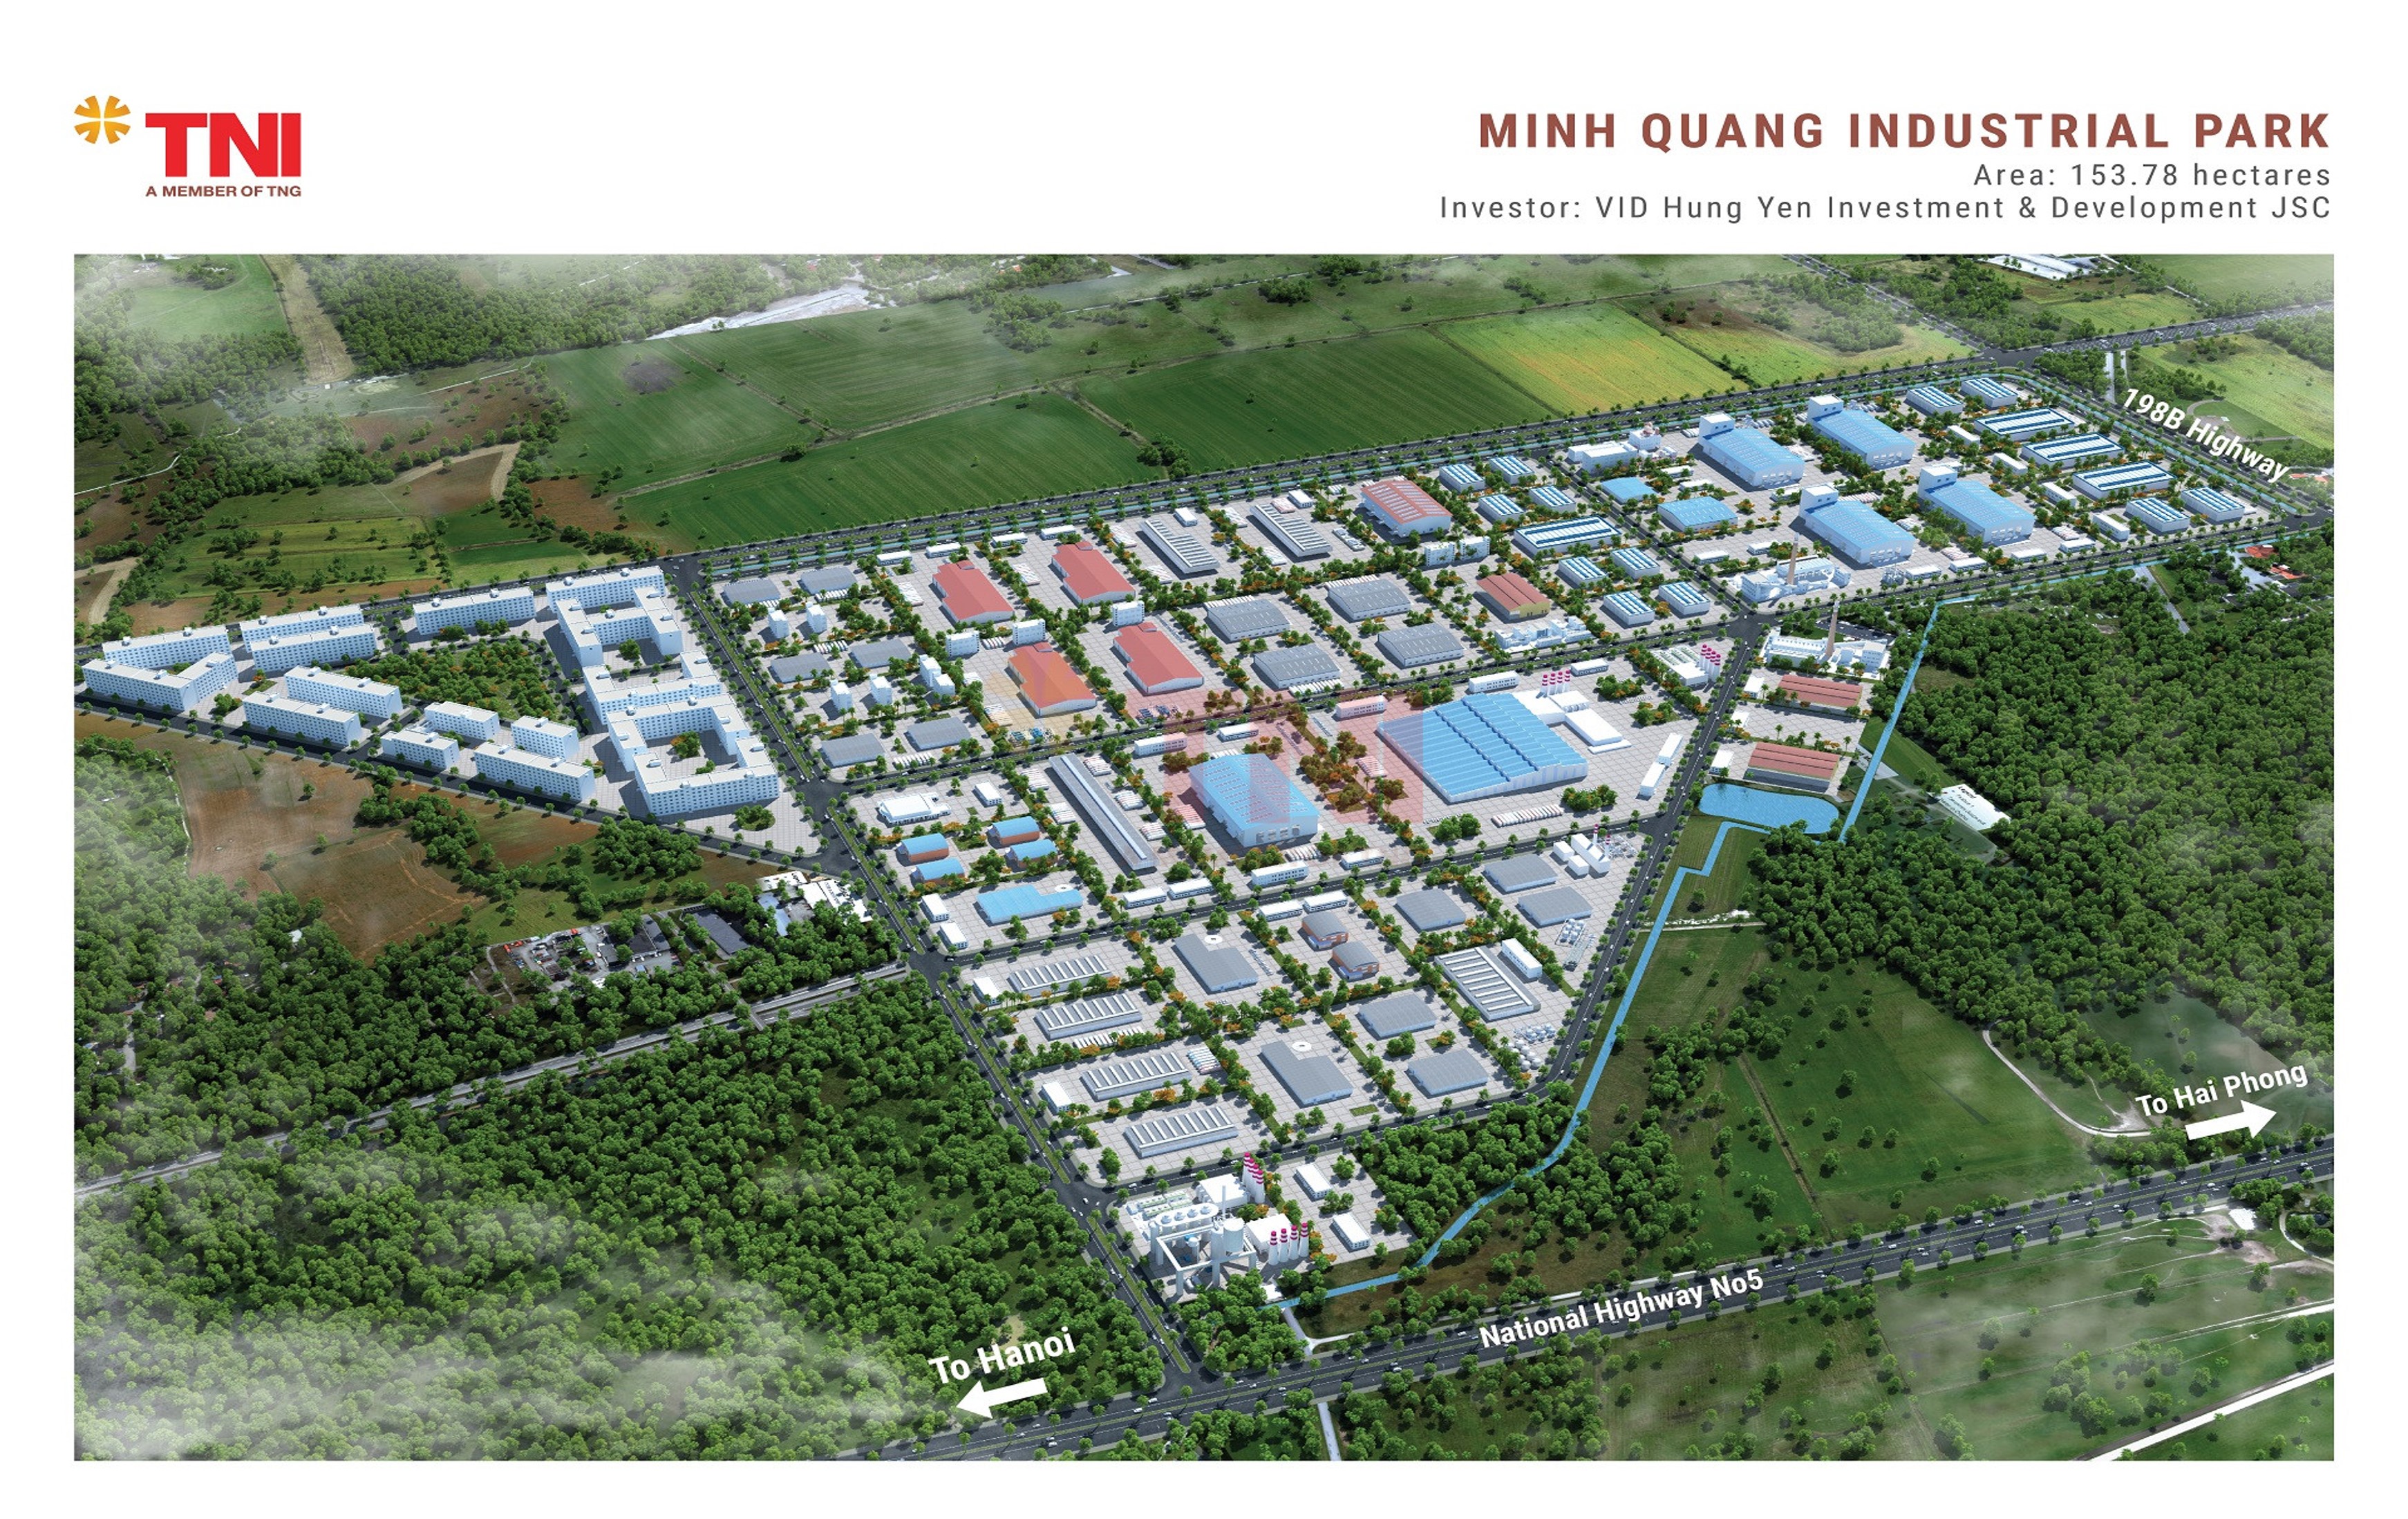 Minh Quang Industrial Park